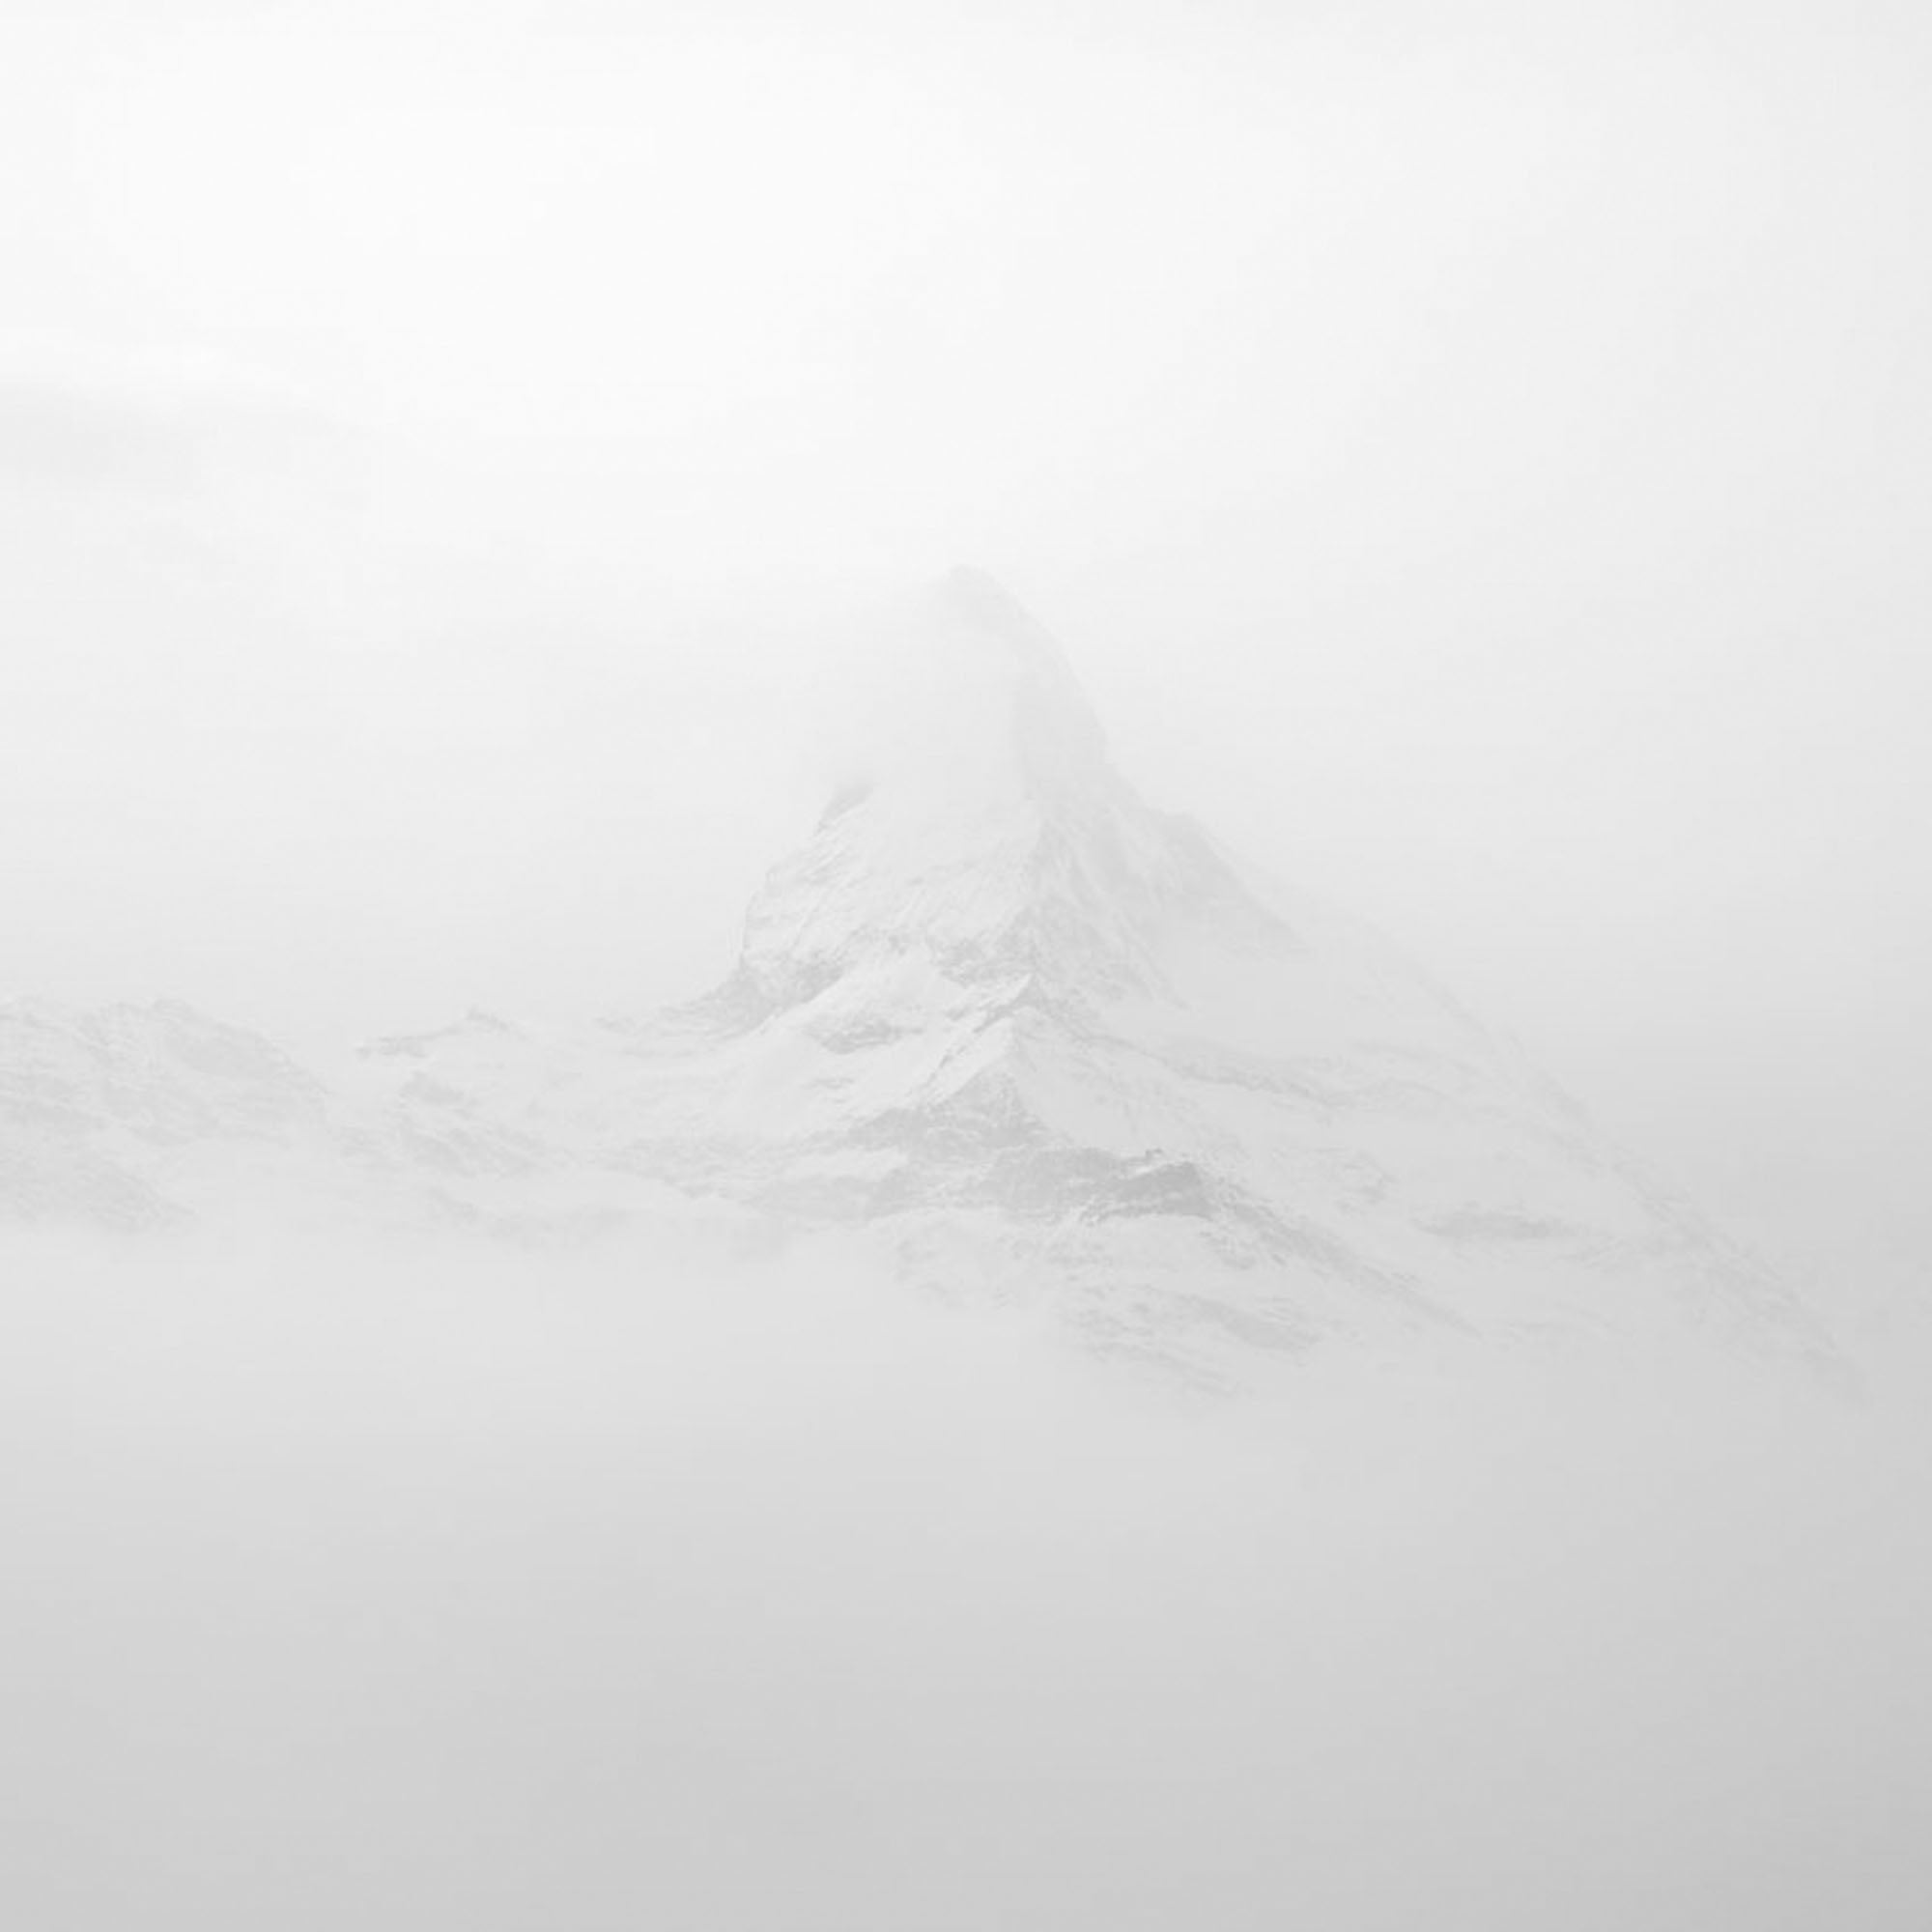 Matterhorn 2, Switzerland